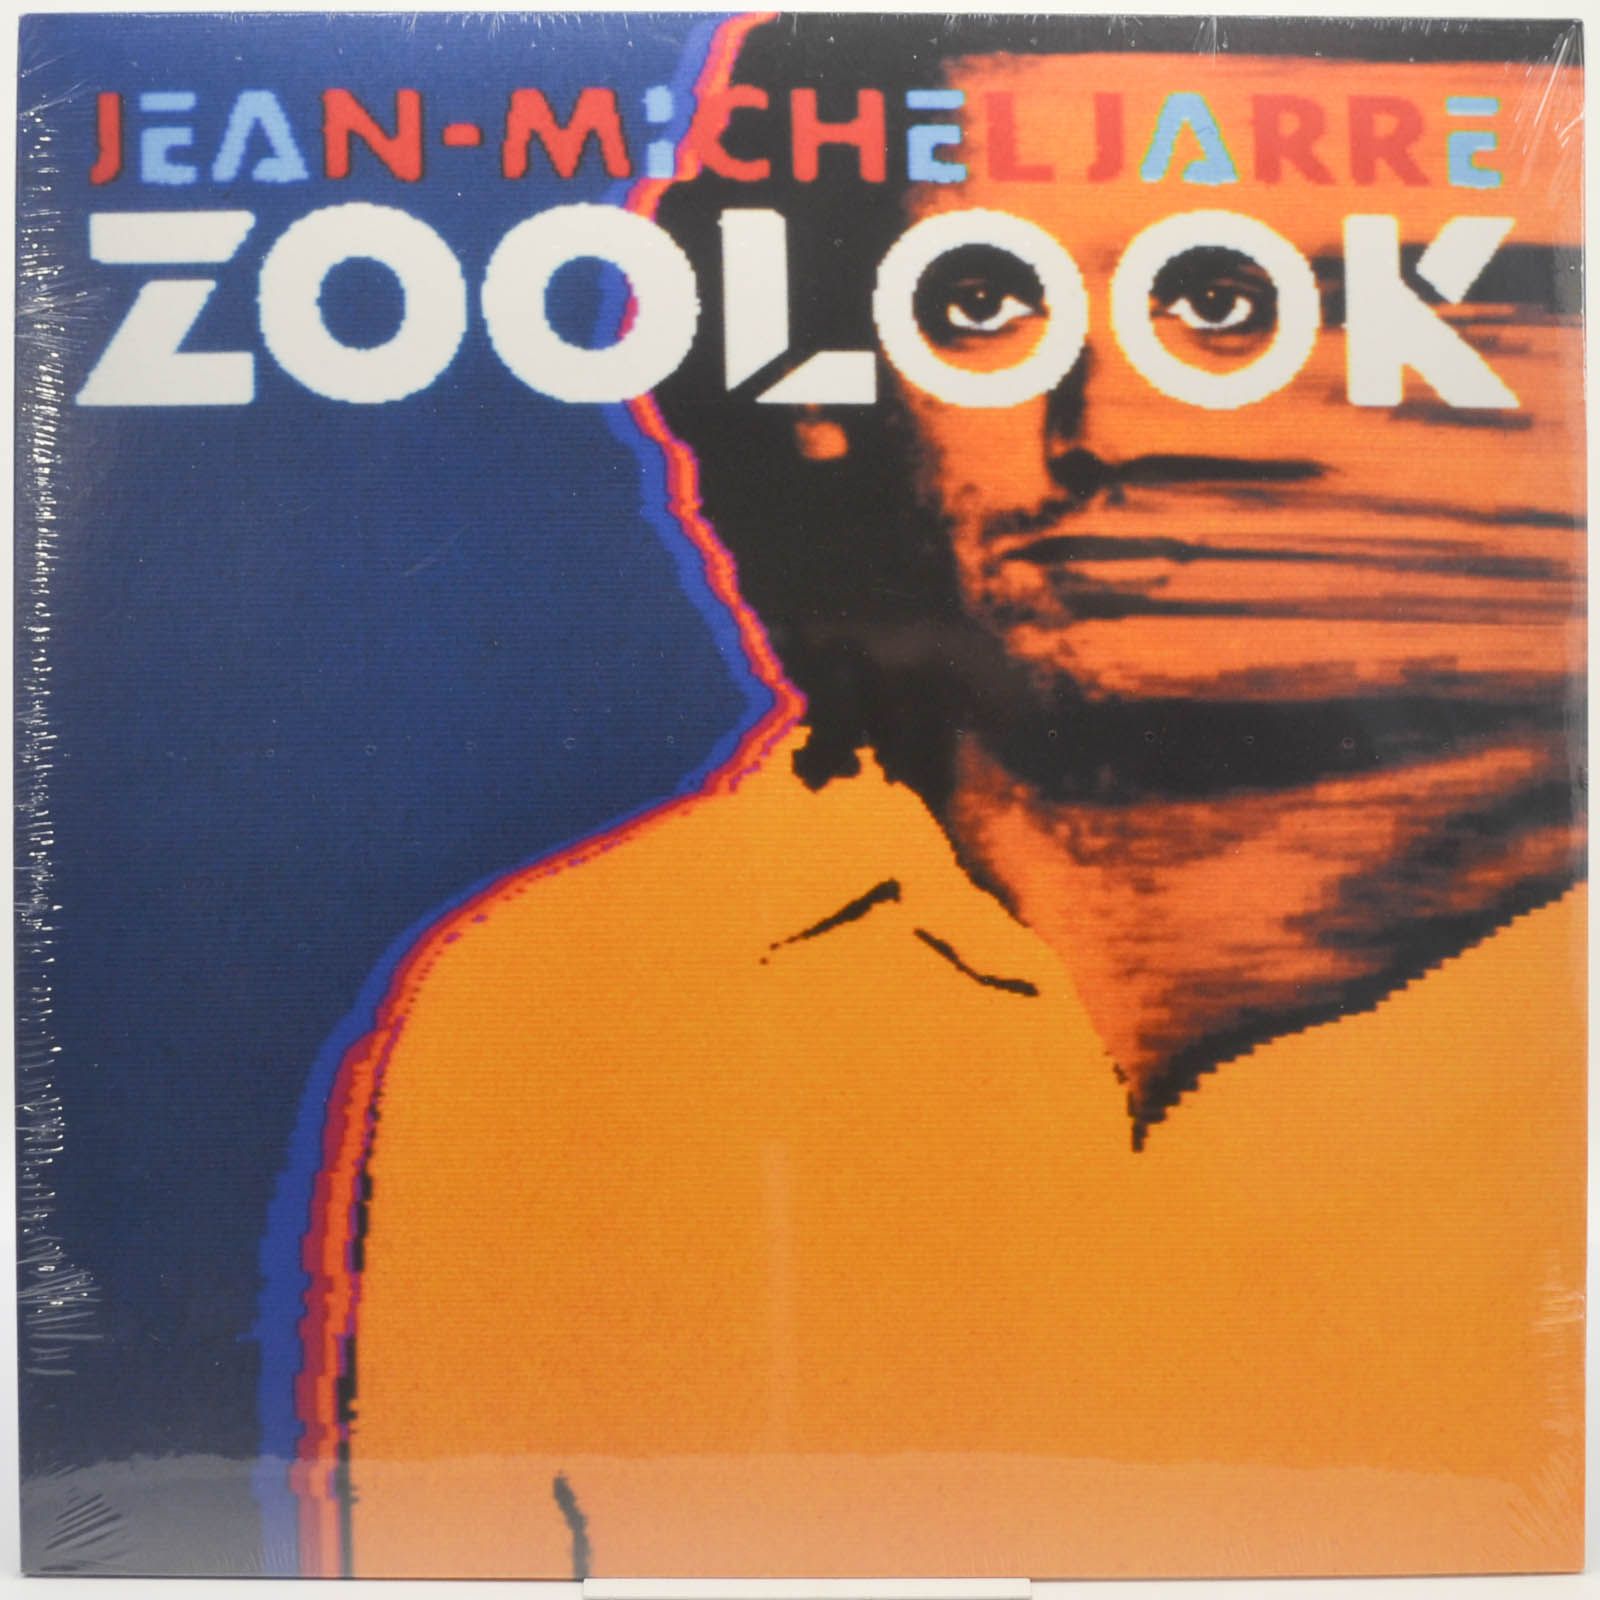 Jean-Michel Jarre — Zoolook, 1984